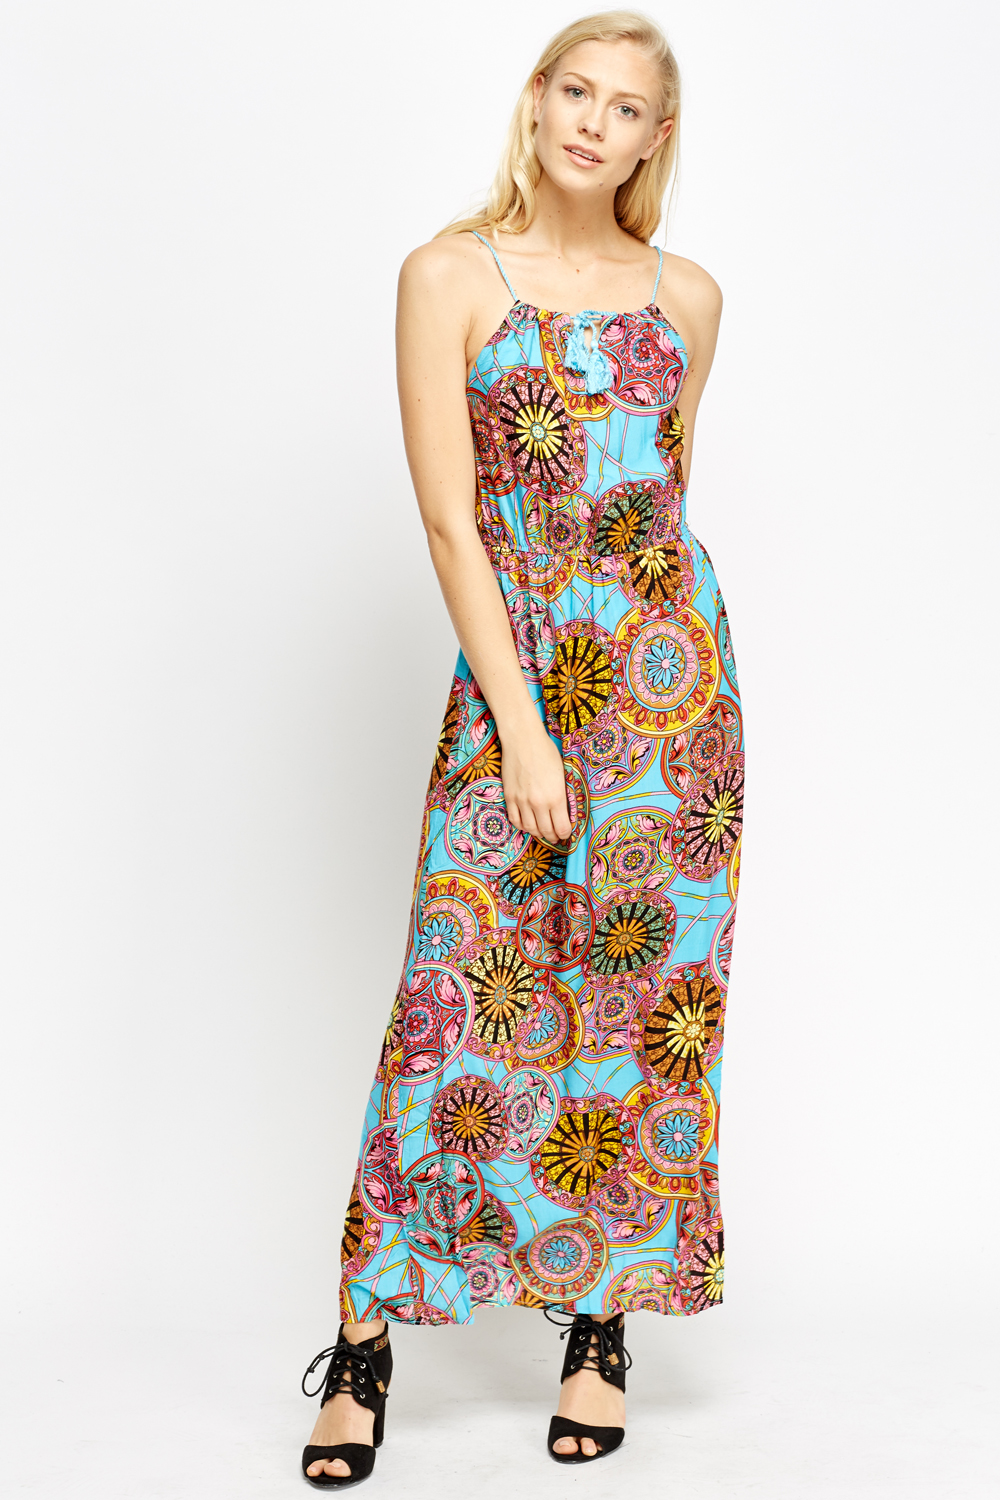 Kaleidoscope Print Maxi Dress - Just $7